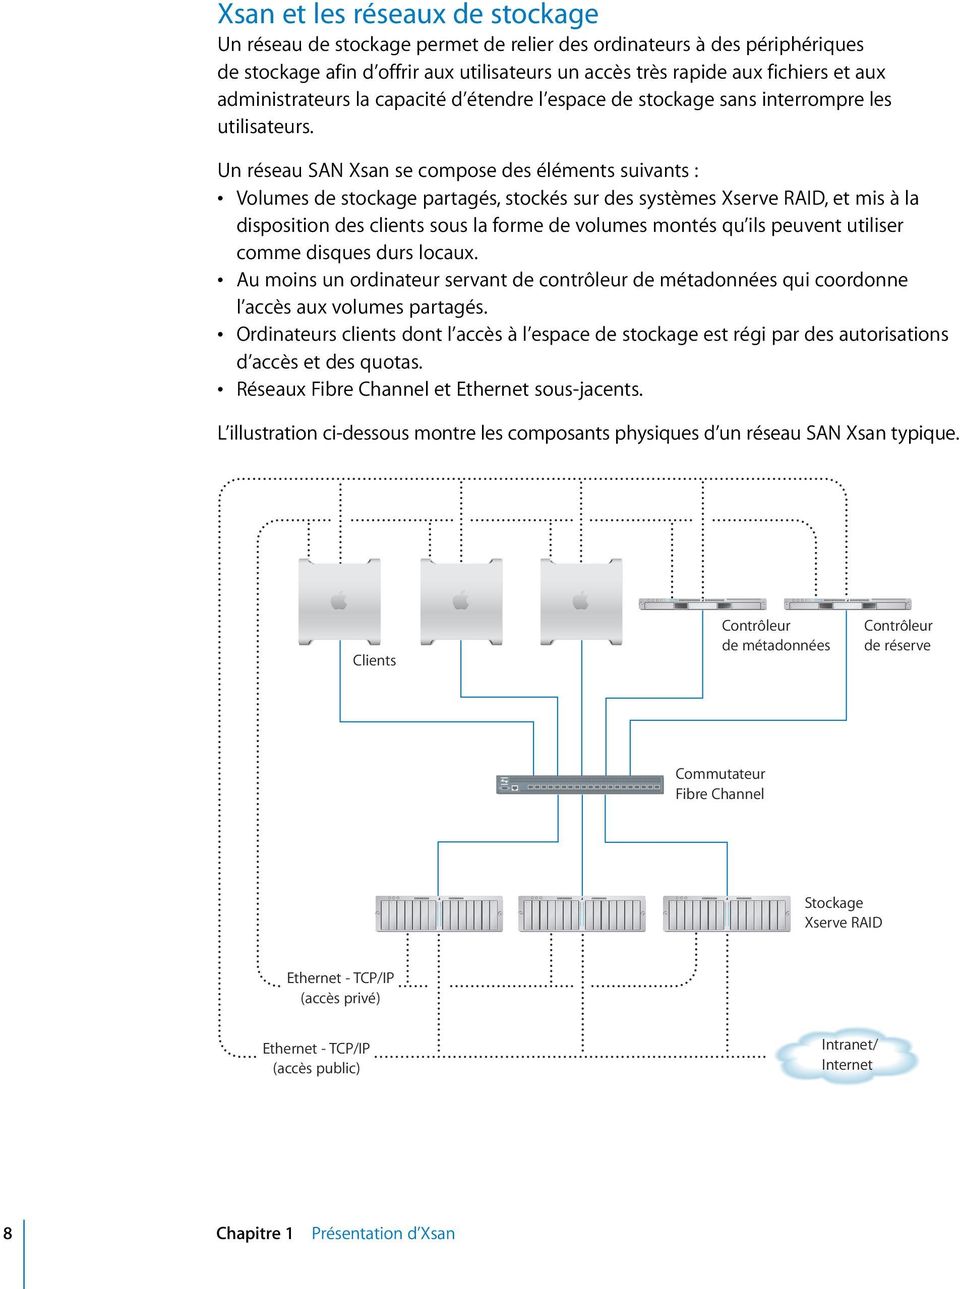 Un réseau SAN Xsan se compose des éléments suivants : Volumes de stockage partagés, stockés sur des systèmes Xserve RAID, et mis à la disposition des clients sous la forme de volumes montés qu ils